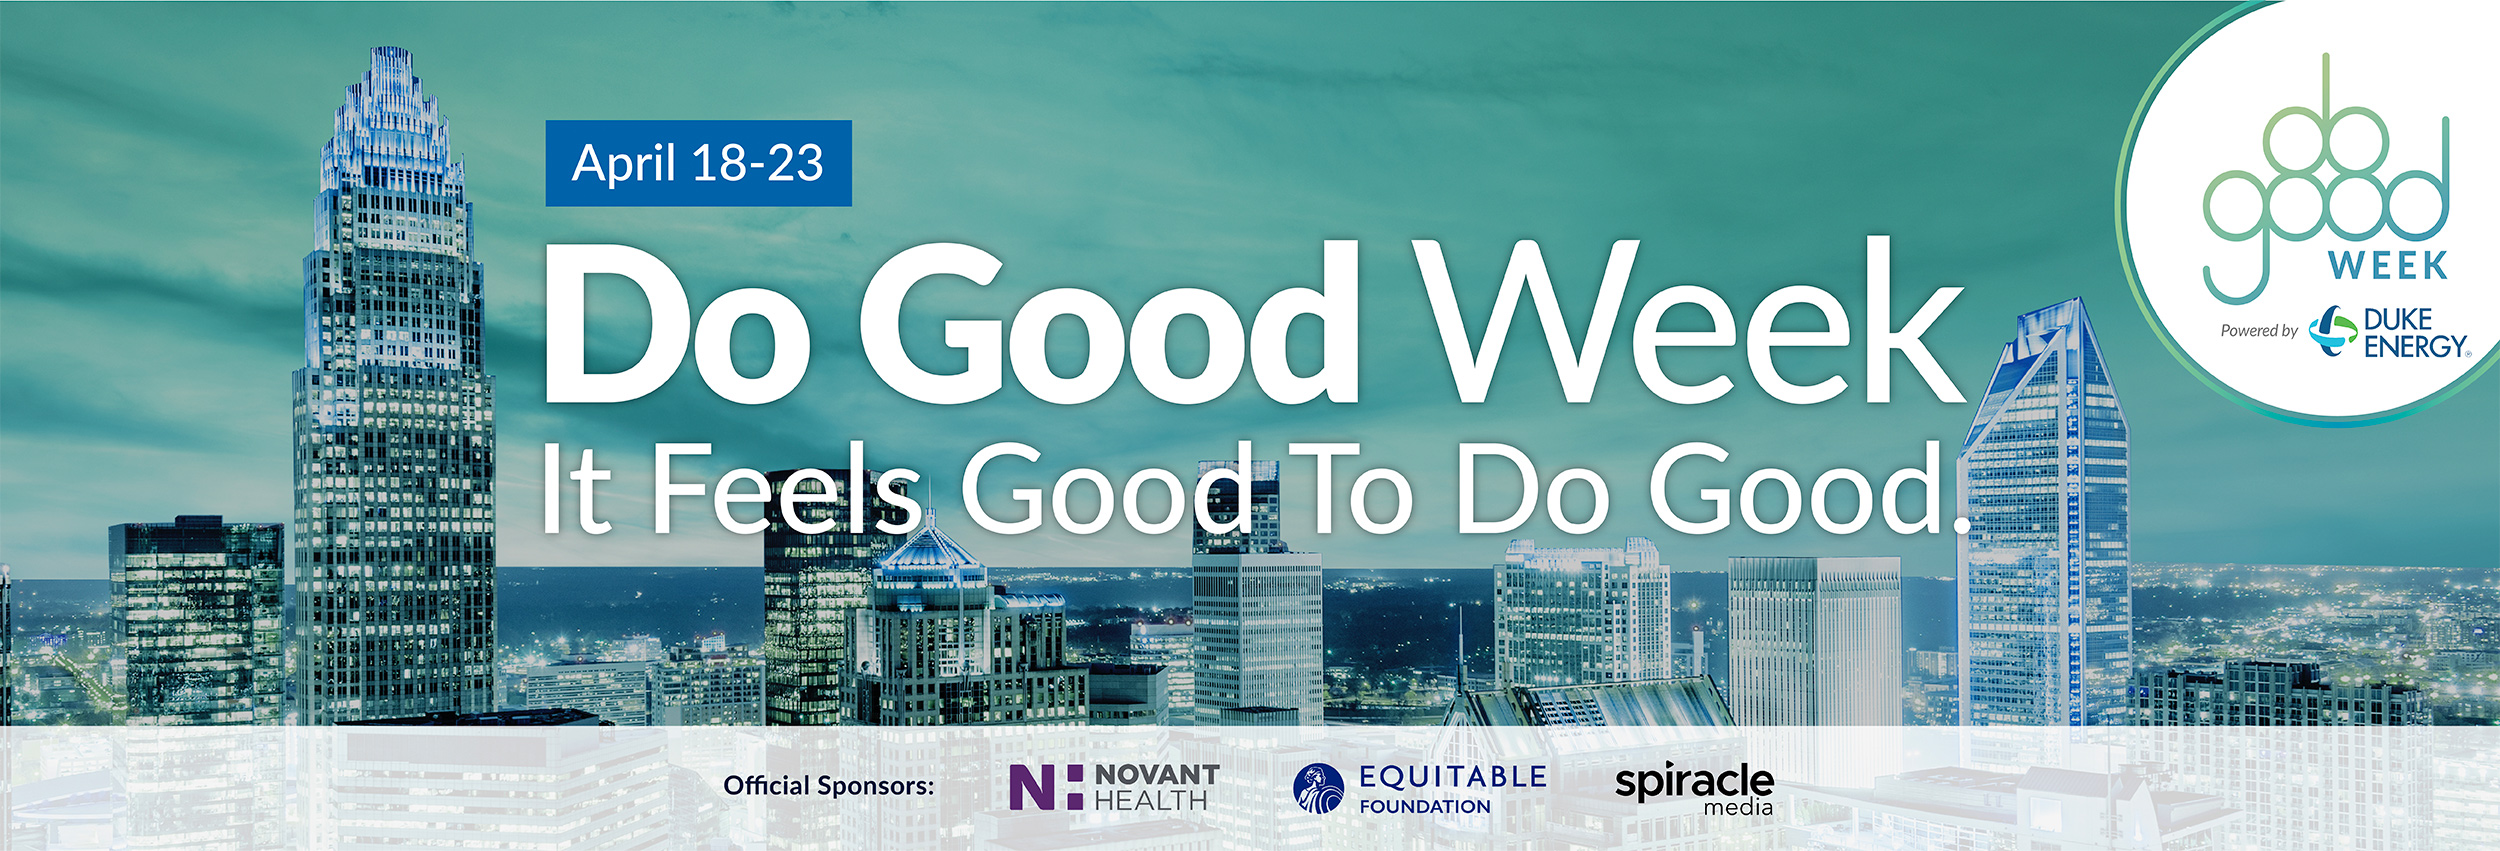 April 18-23 Do Good Week: it feels good to do good. sponsors: Duke Energy, Novant Health, Equitable Foundation, Spiracle Media